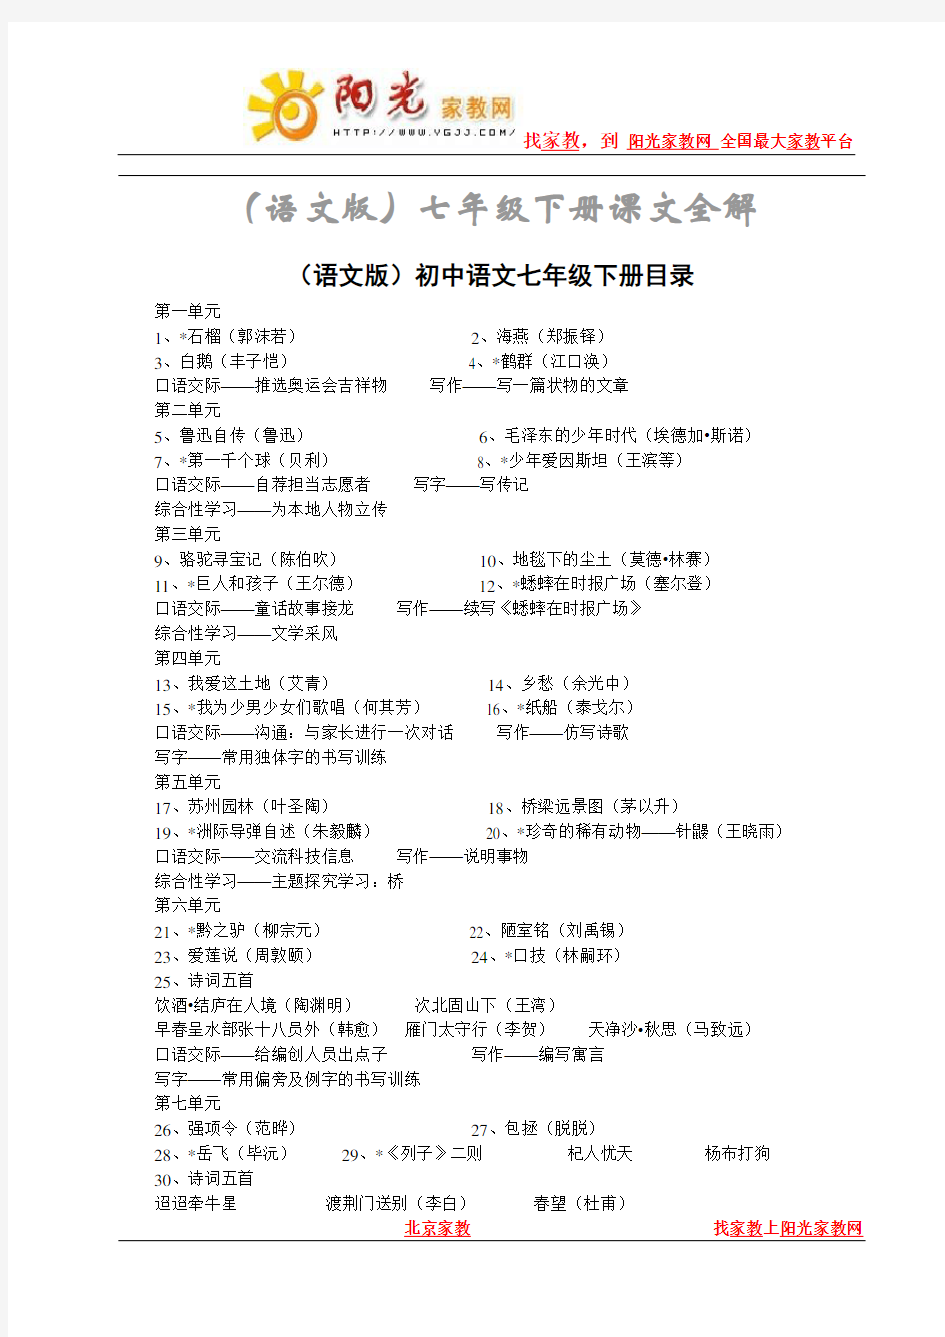 语文版初中语文七年级下册课文全解(含课文目录)